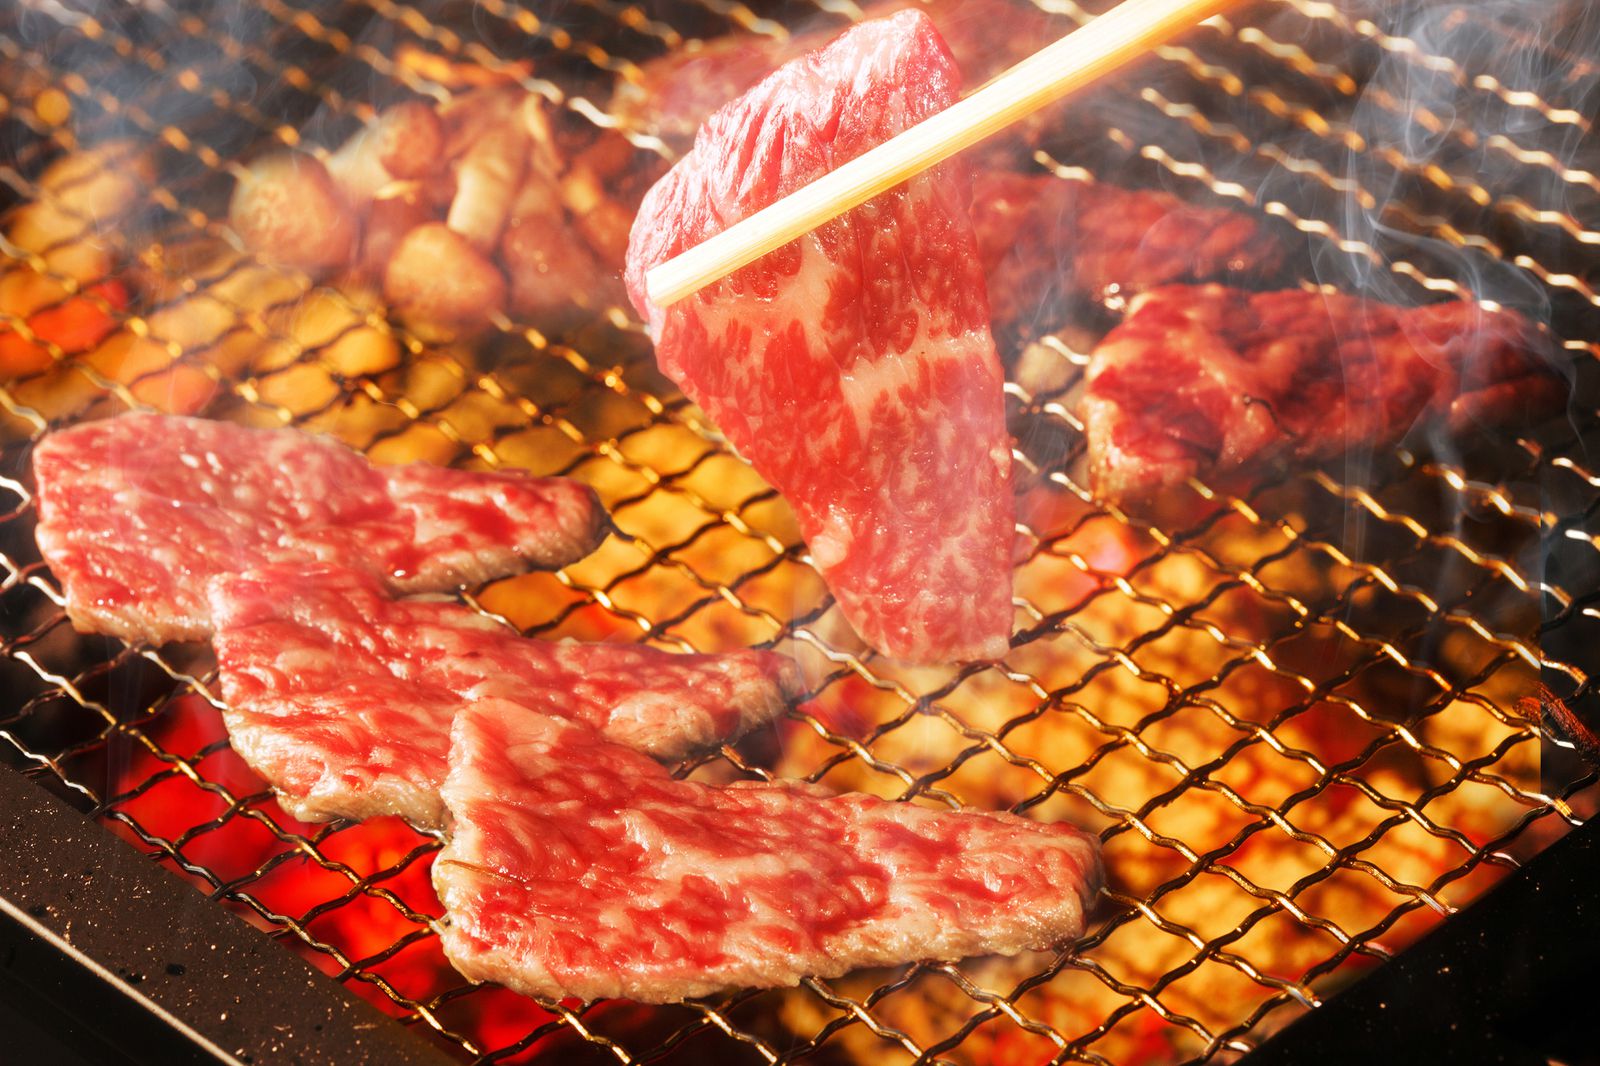 絶品焼肉をコスパ良く食べよう 日暮里でおすすめの焼肉店8選 Retrip リトリップ